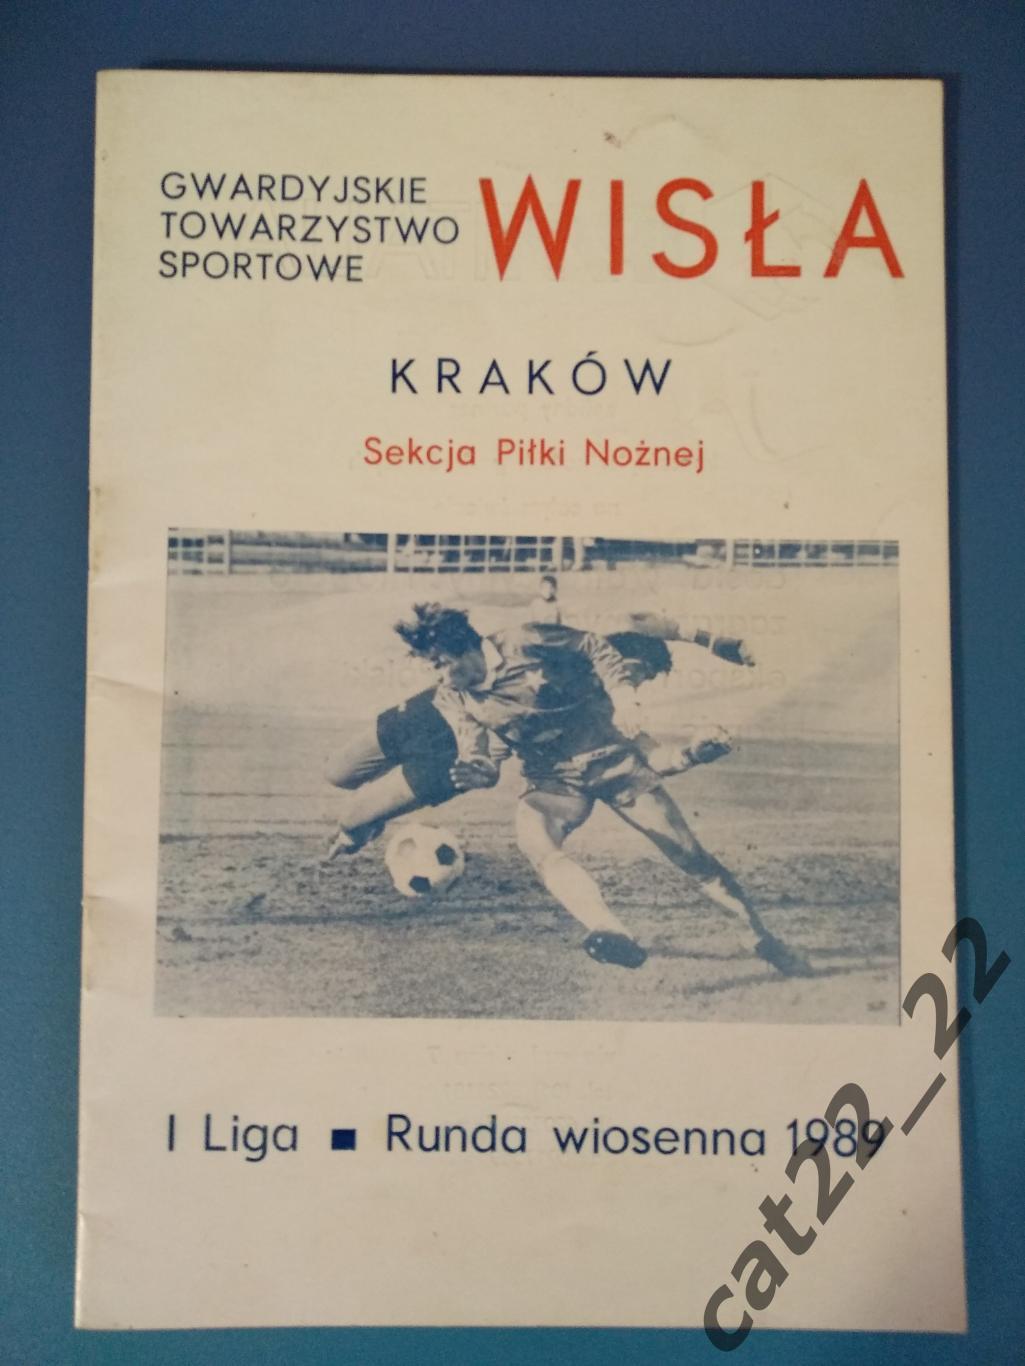 Календарь - справочник: Висла Краков Польша/Wisla Krakow Poland 1989